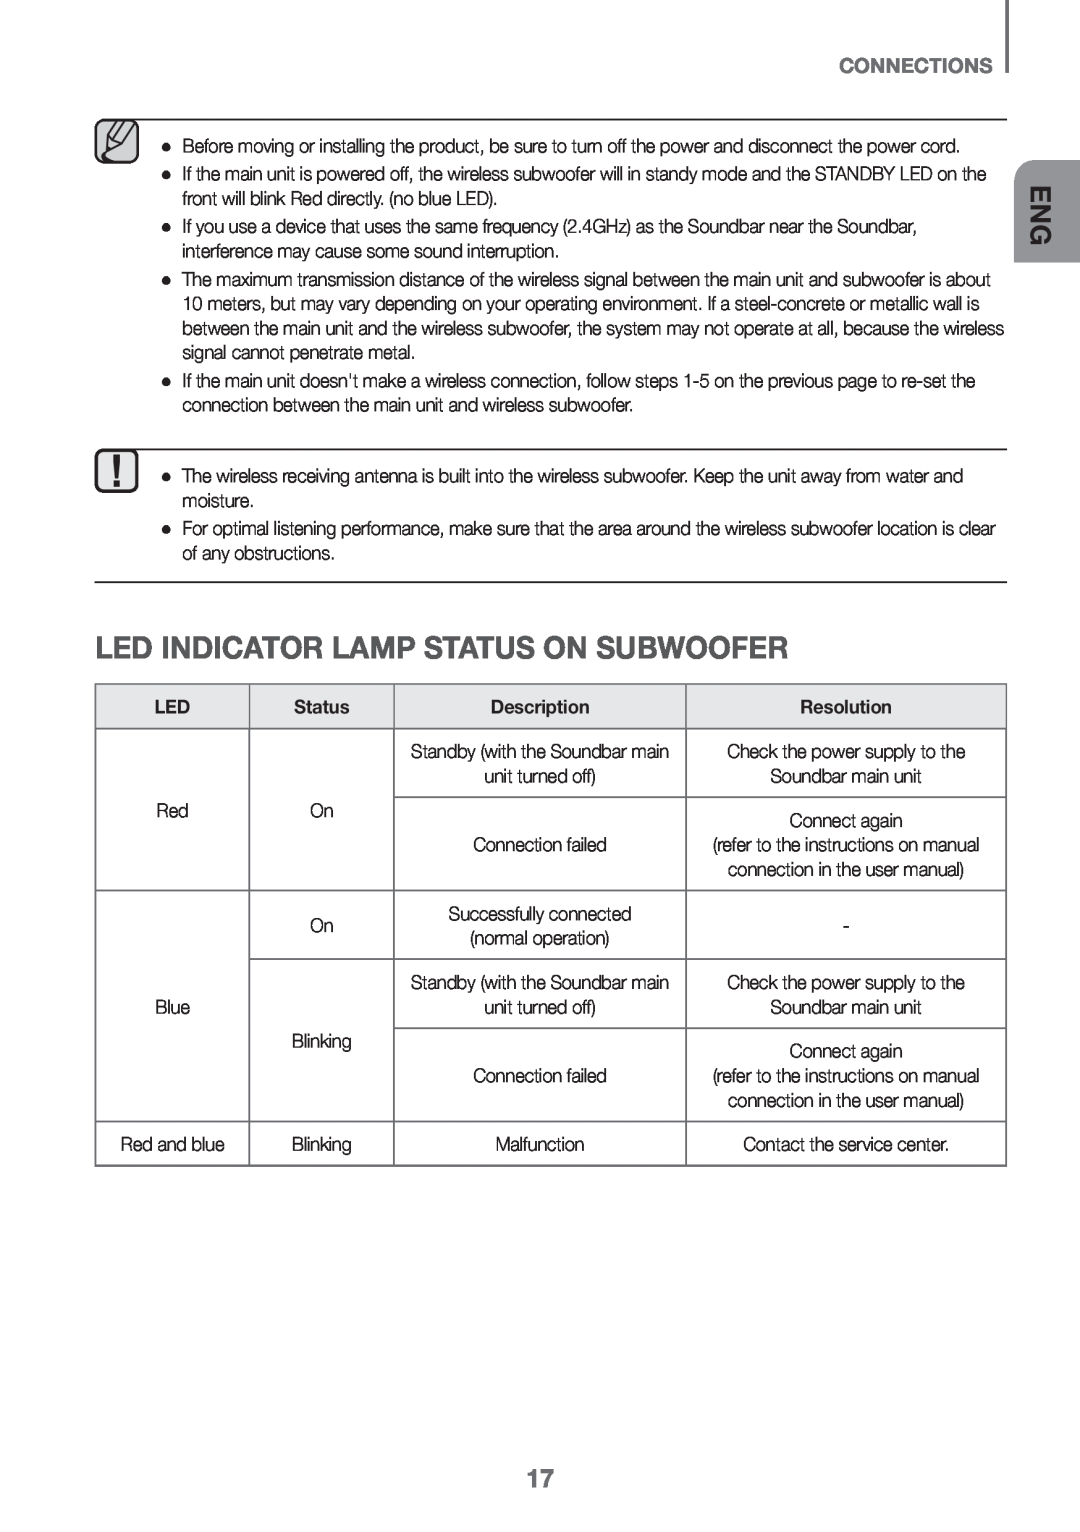 Samsung HW-K650/EN, HW-K651/EN manual LED indicator lamp status on subwoofer, Connections, Status, Description, Resolution 